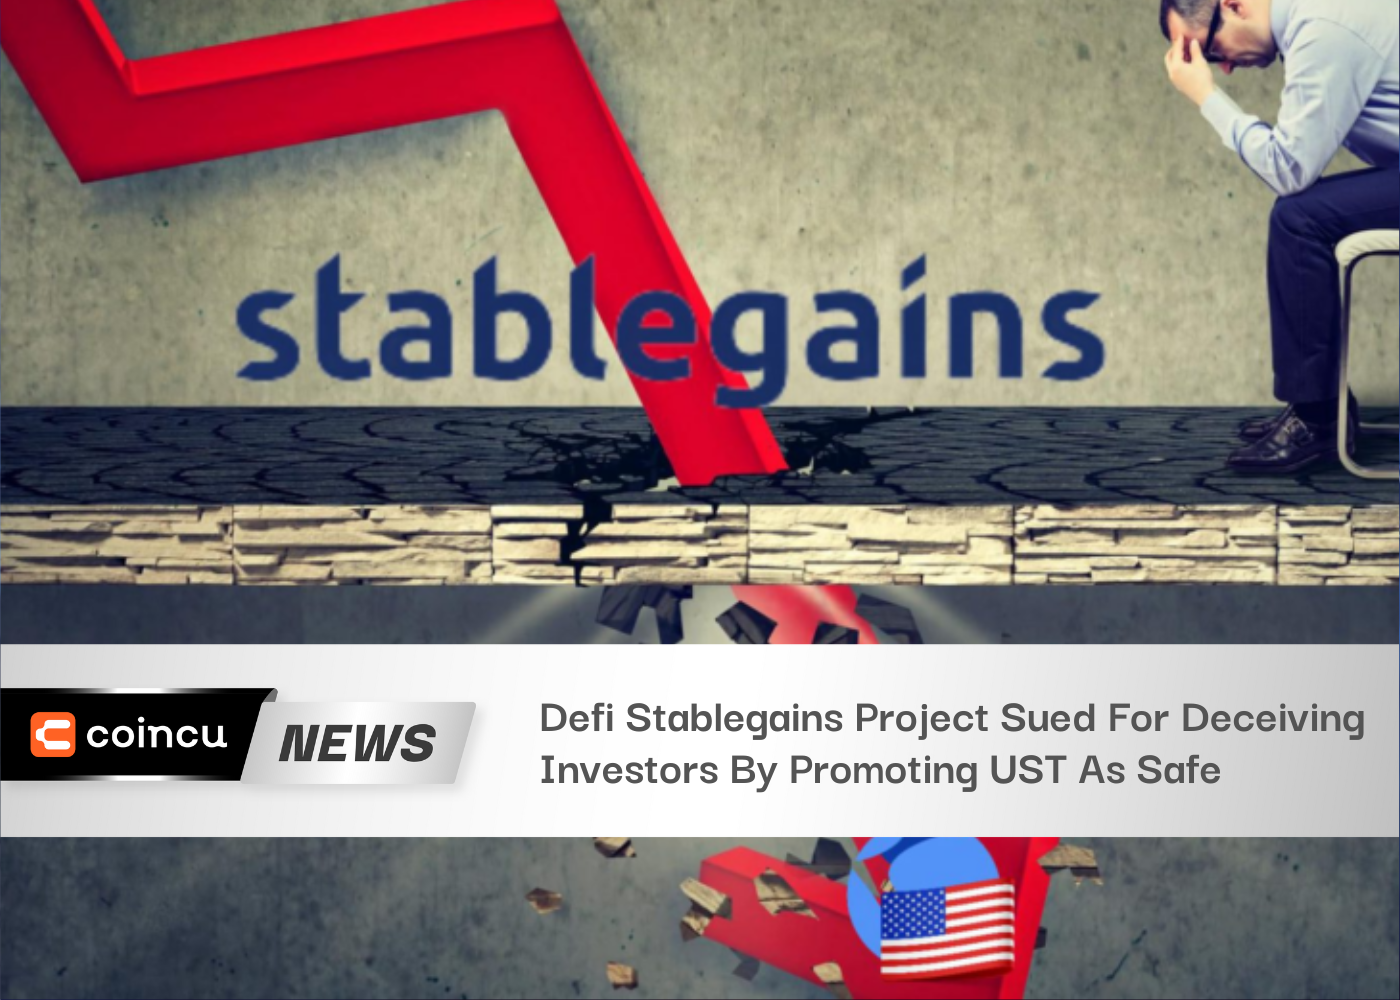 Proyecto Defi Stablegains demandado por engañar a los inversores al promover UST como seguro